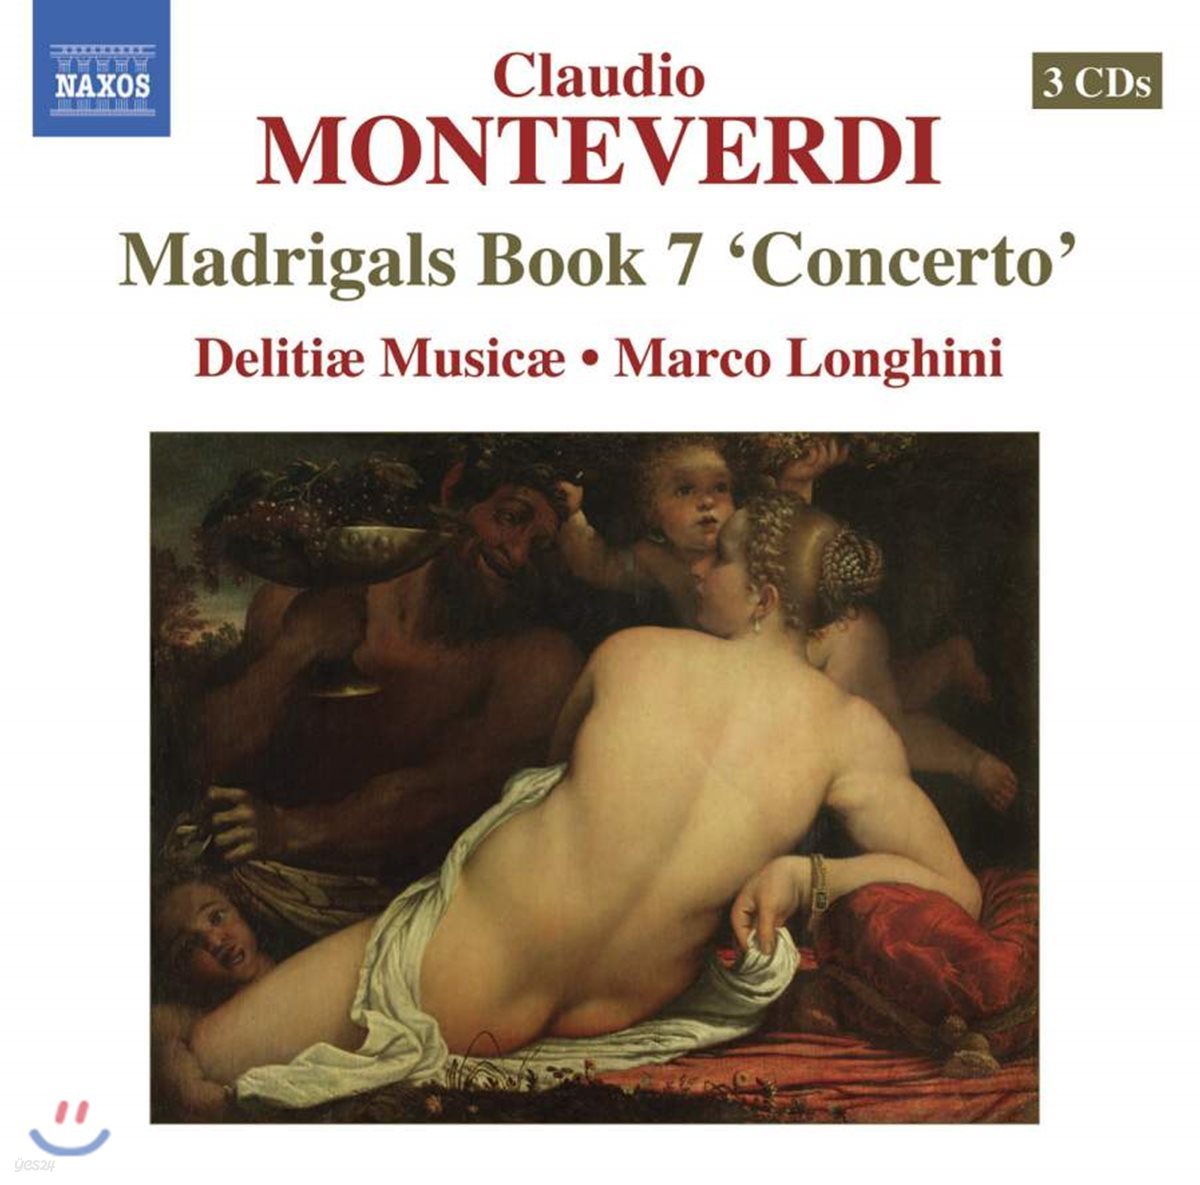 Delitiae Musicae 몬테베르디: 마드리갈 7권 (Monteverdi: Il settimo Libro de Madrigali &#39;Concerto&#39;, 1619)